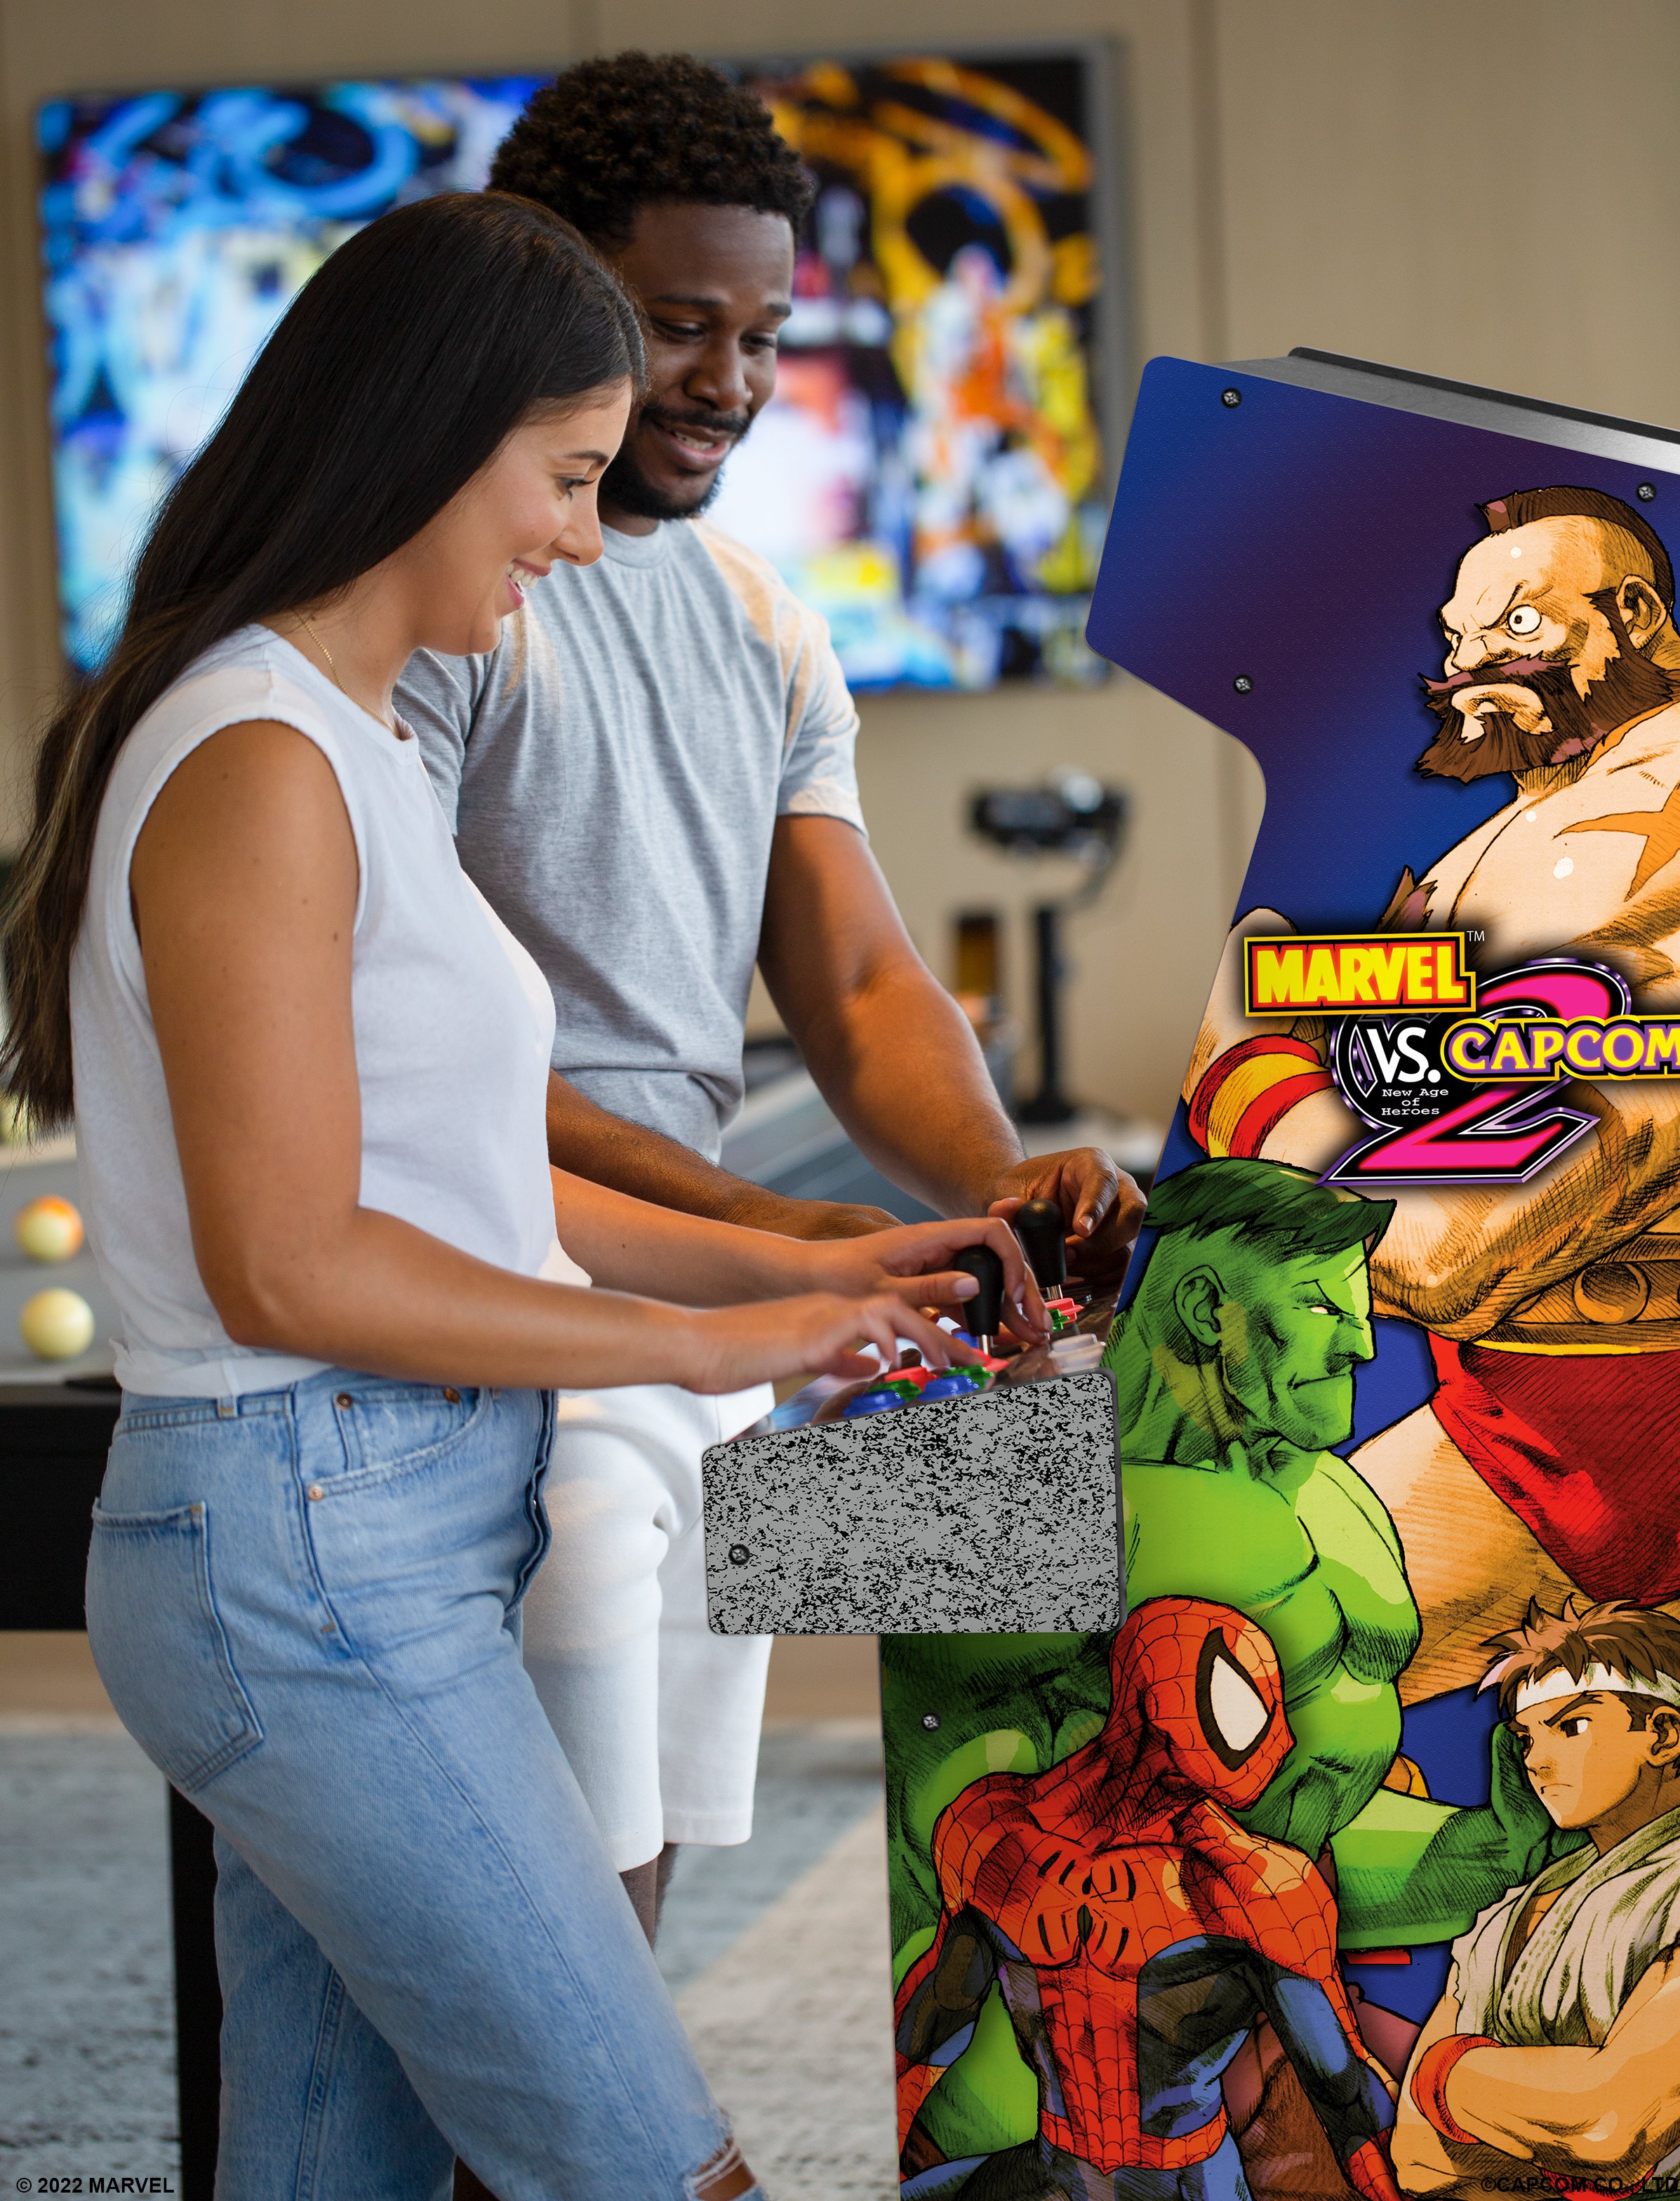 Evo 2002: Marvel vs. Capcom 2 arcade cabinet re-release announced - Polygon